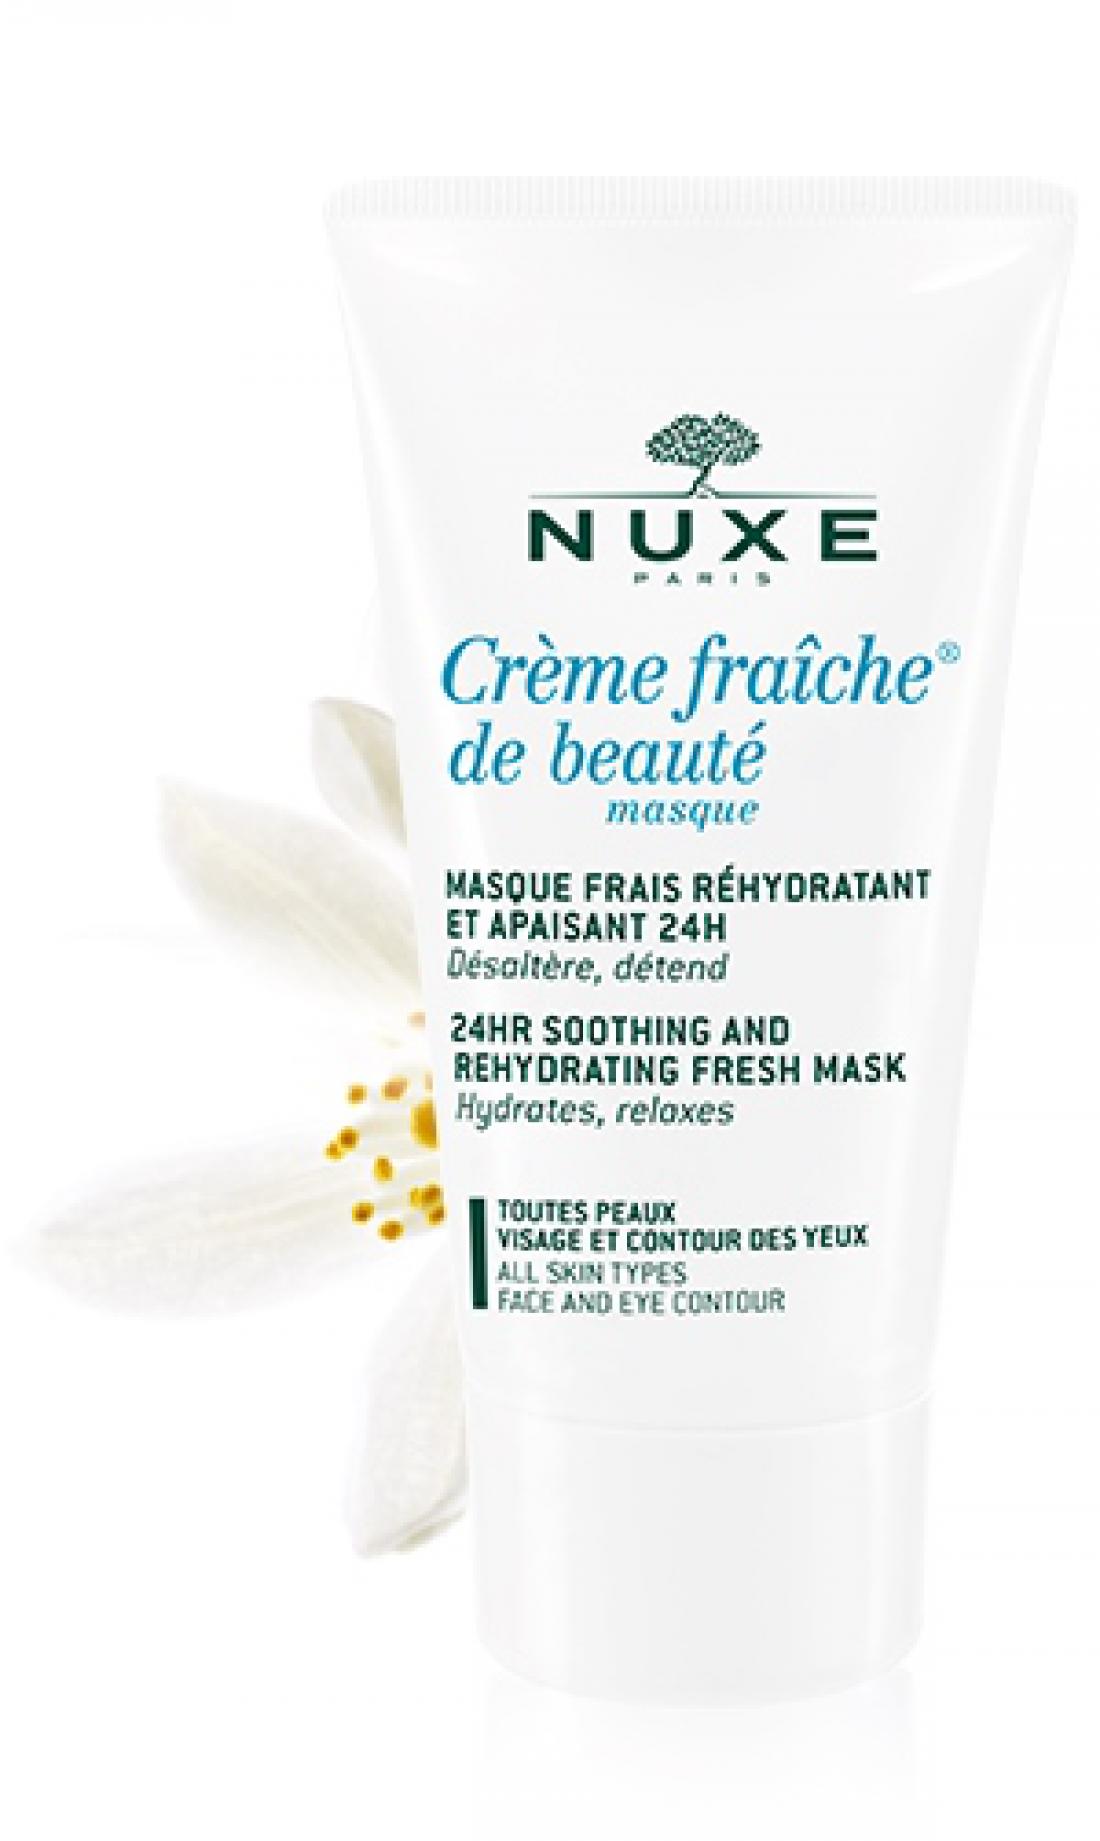 Nuxova nežna osvežilna maska koži daje veliko vlage, jo pomirja ter zmanjšuje razdraženost, občutek neudobja in rdečico.